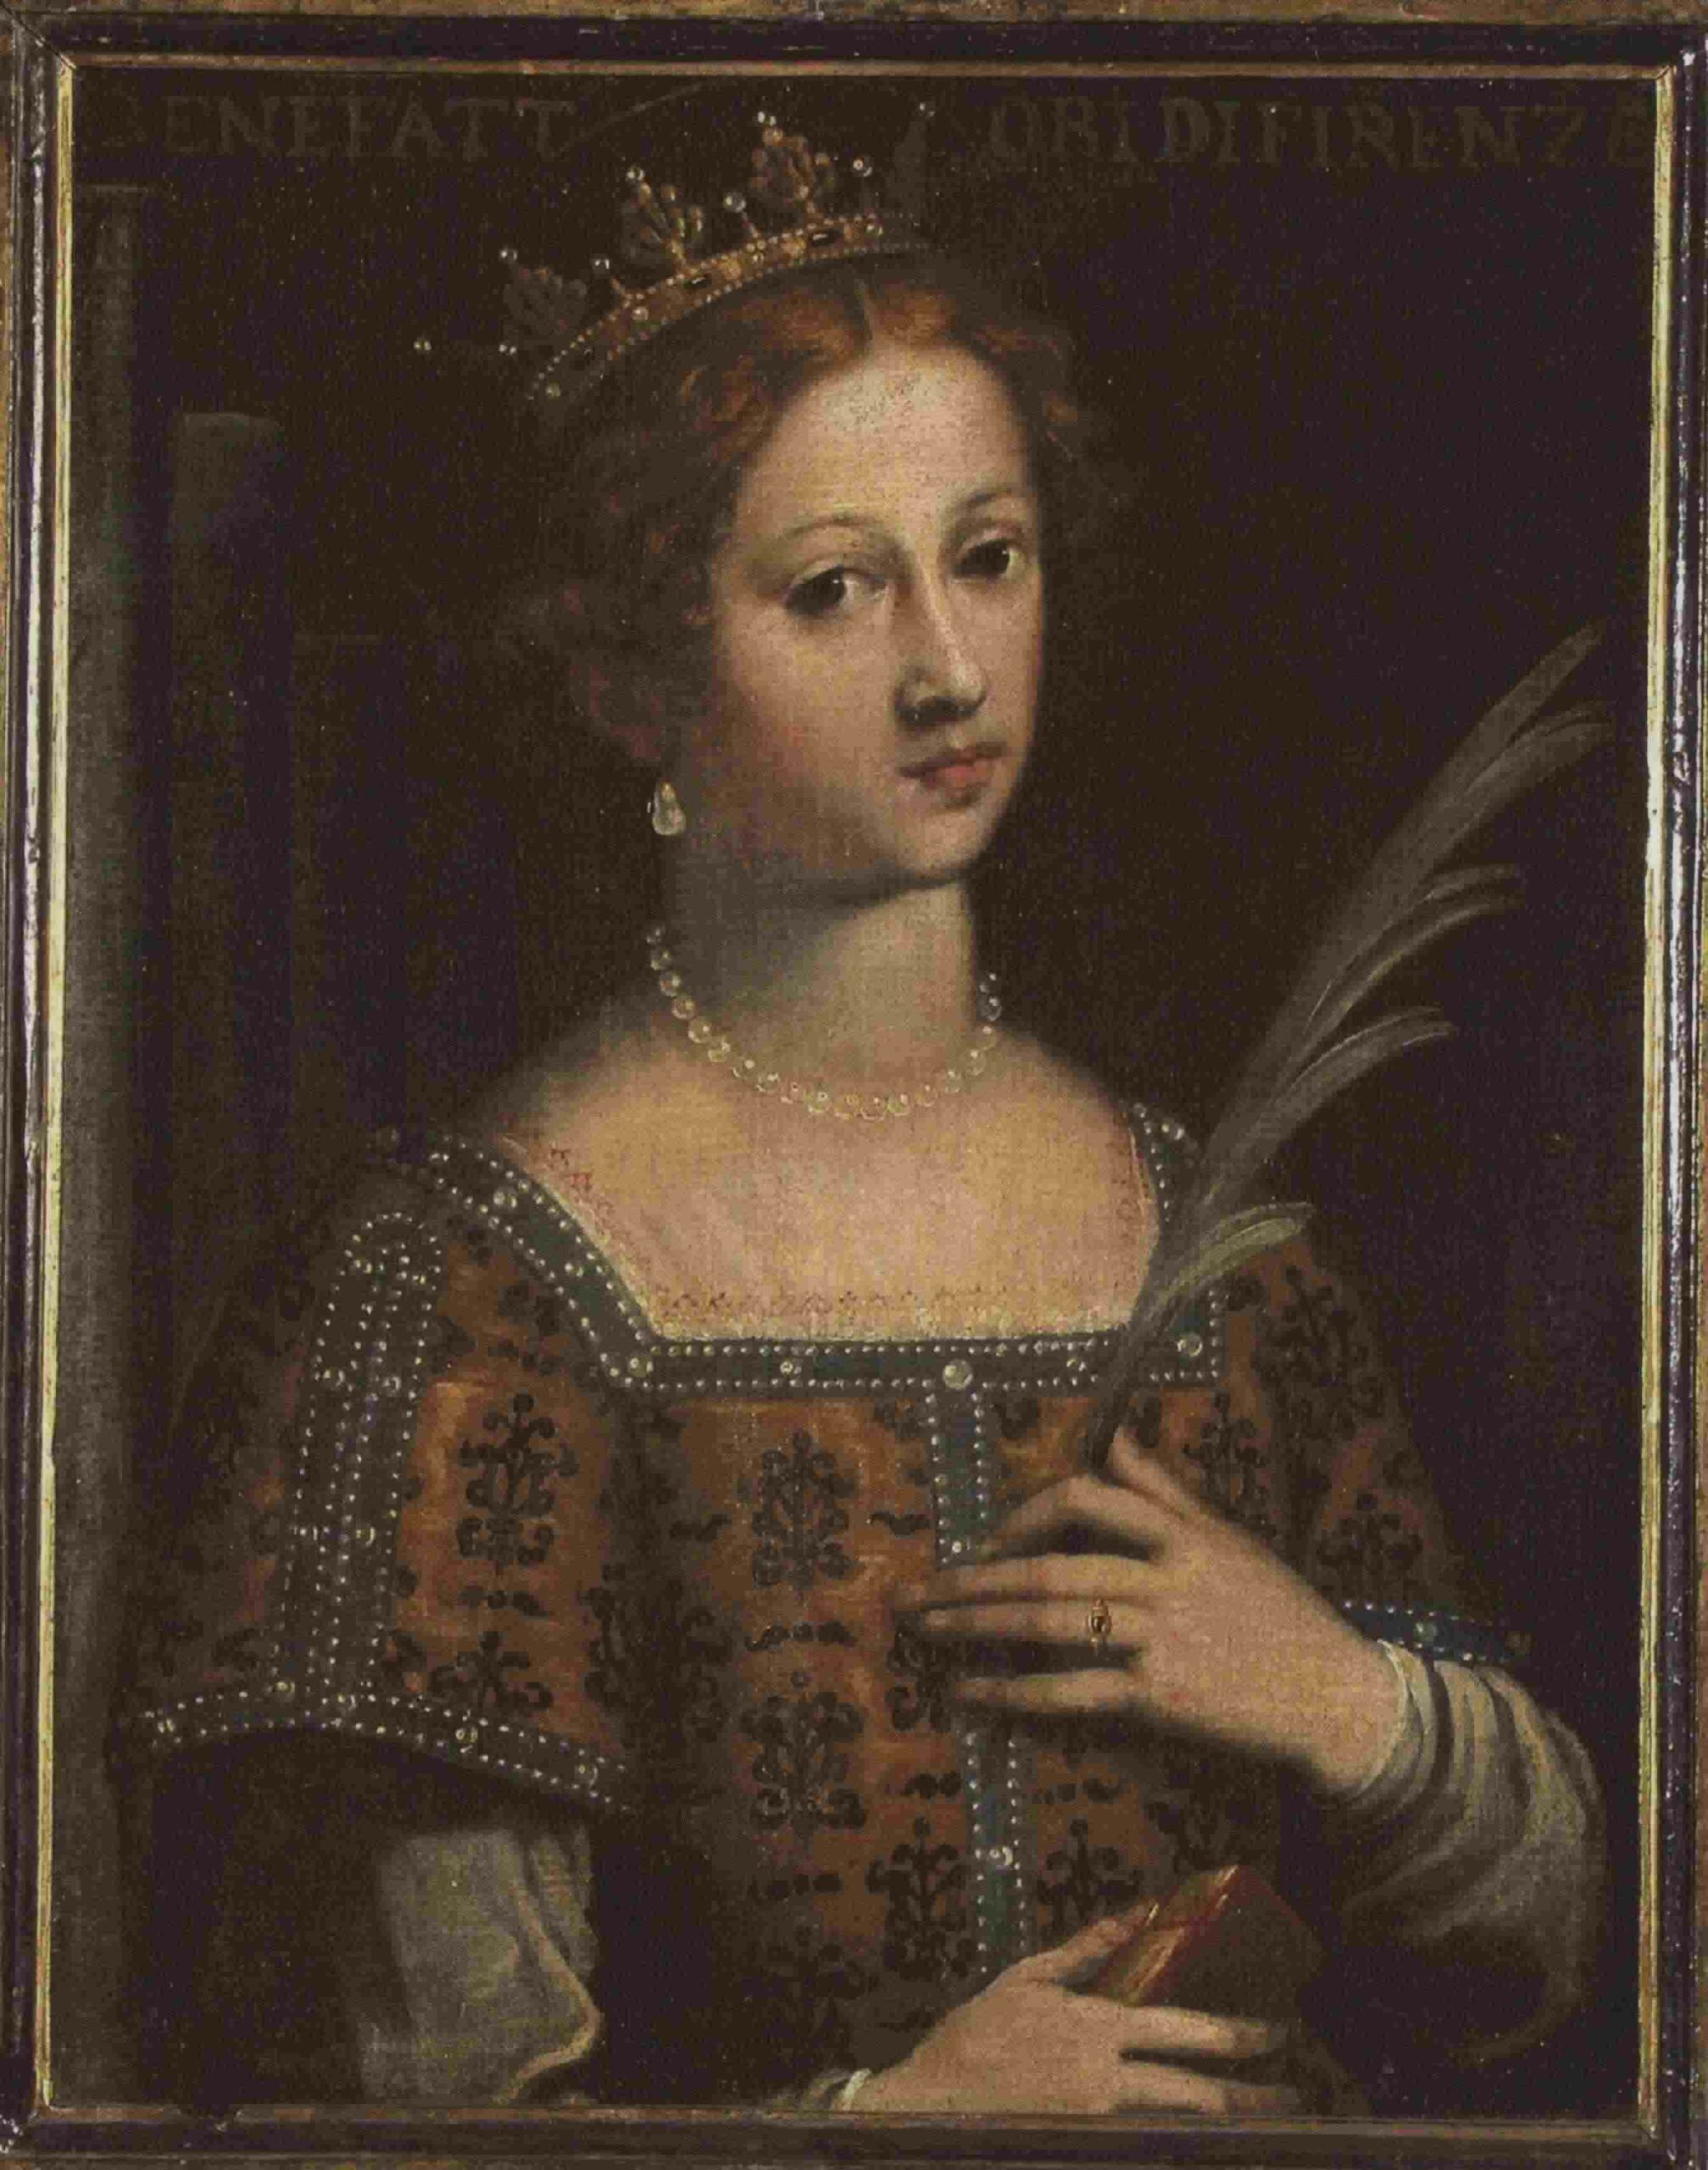 I Tesori del Casentino: Isabella de’ Medici nelle vesti di Santa Cecilia al Museo della Verna